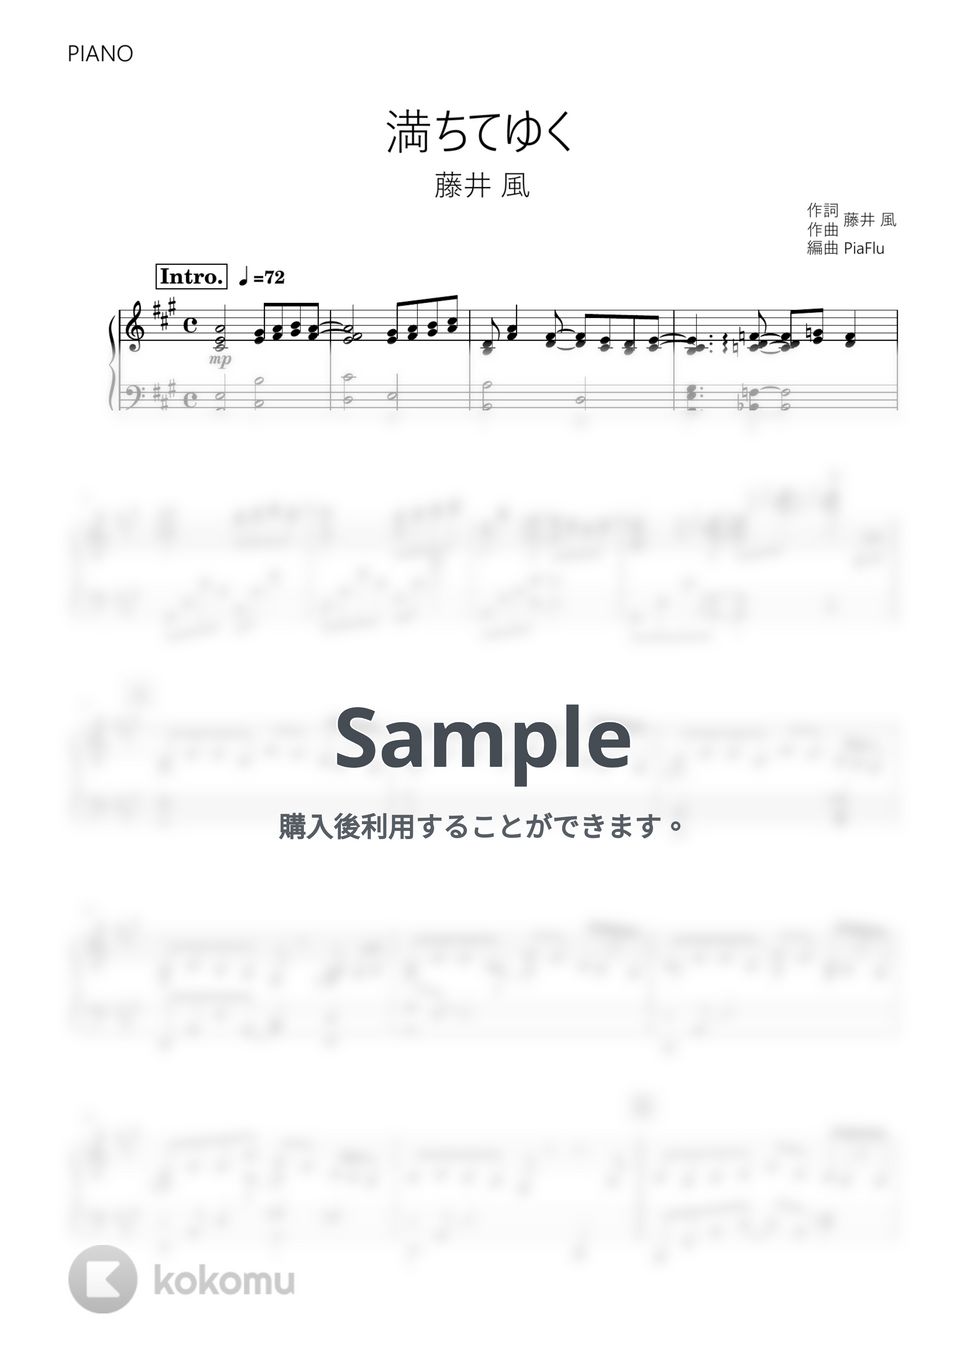 藤井 風 - 満ちてゆく (ピアノ) by PiaFlu